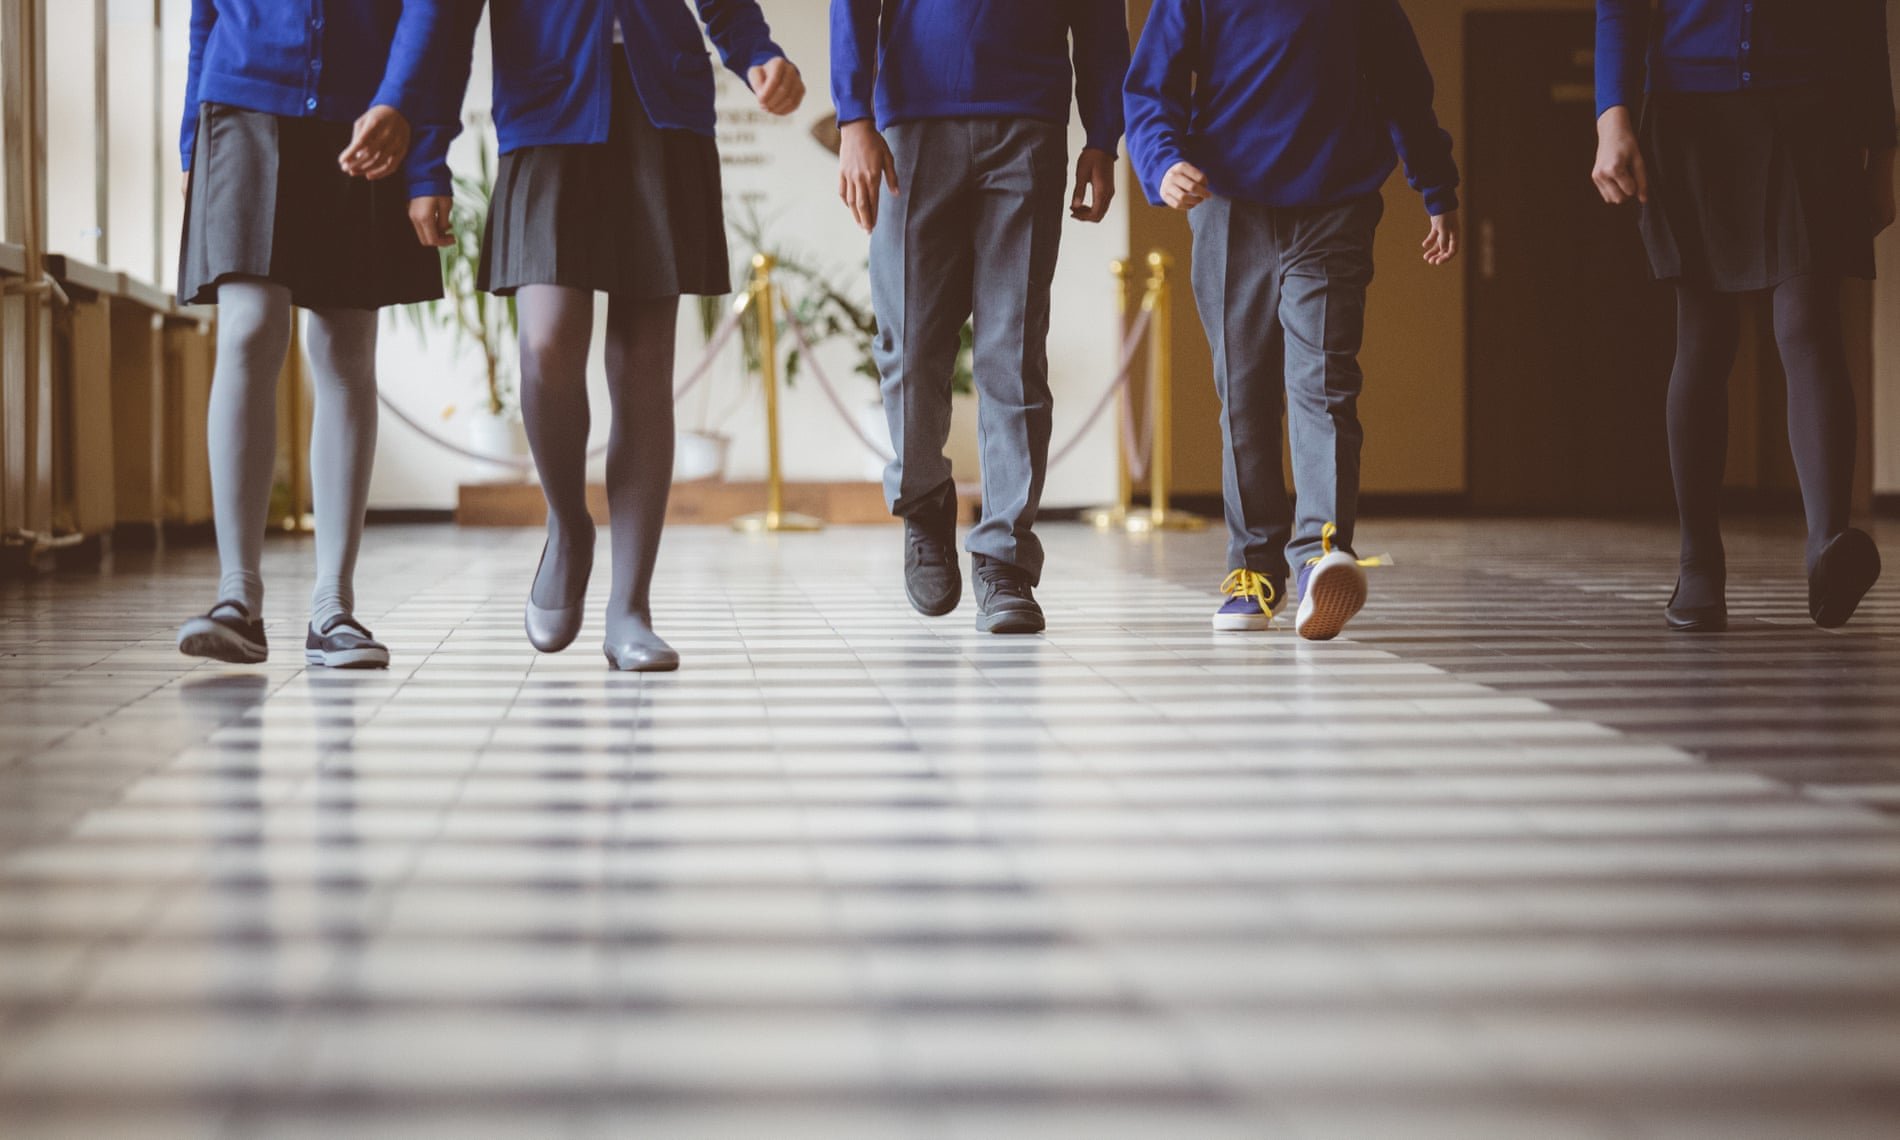 UK Teenage Boys: Hochrisikogruppe für Sextortion - Lehrer werden aufgefordert, Anzeichen zu erkennen